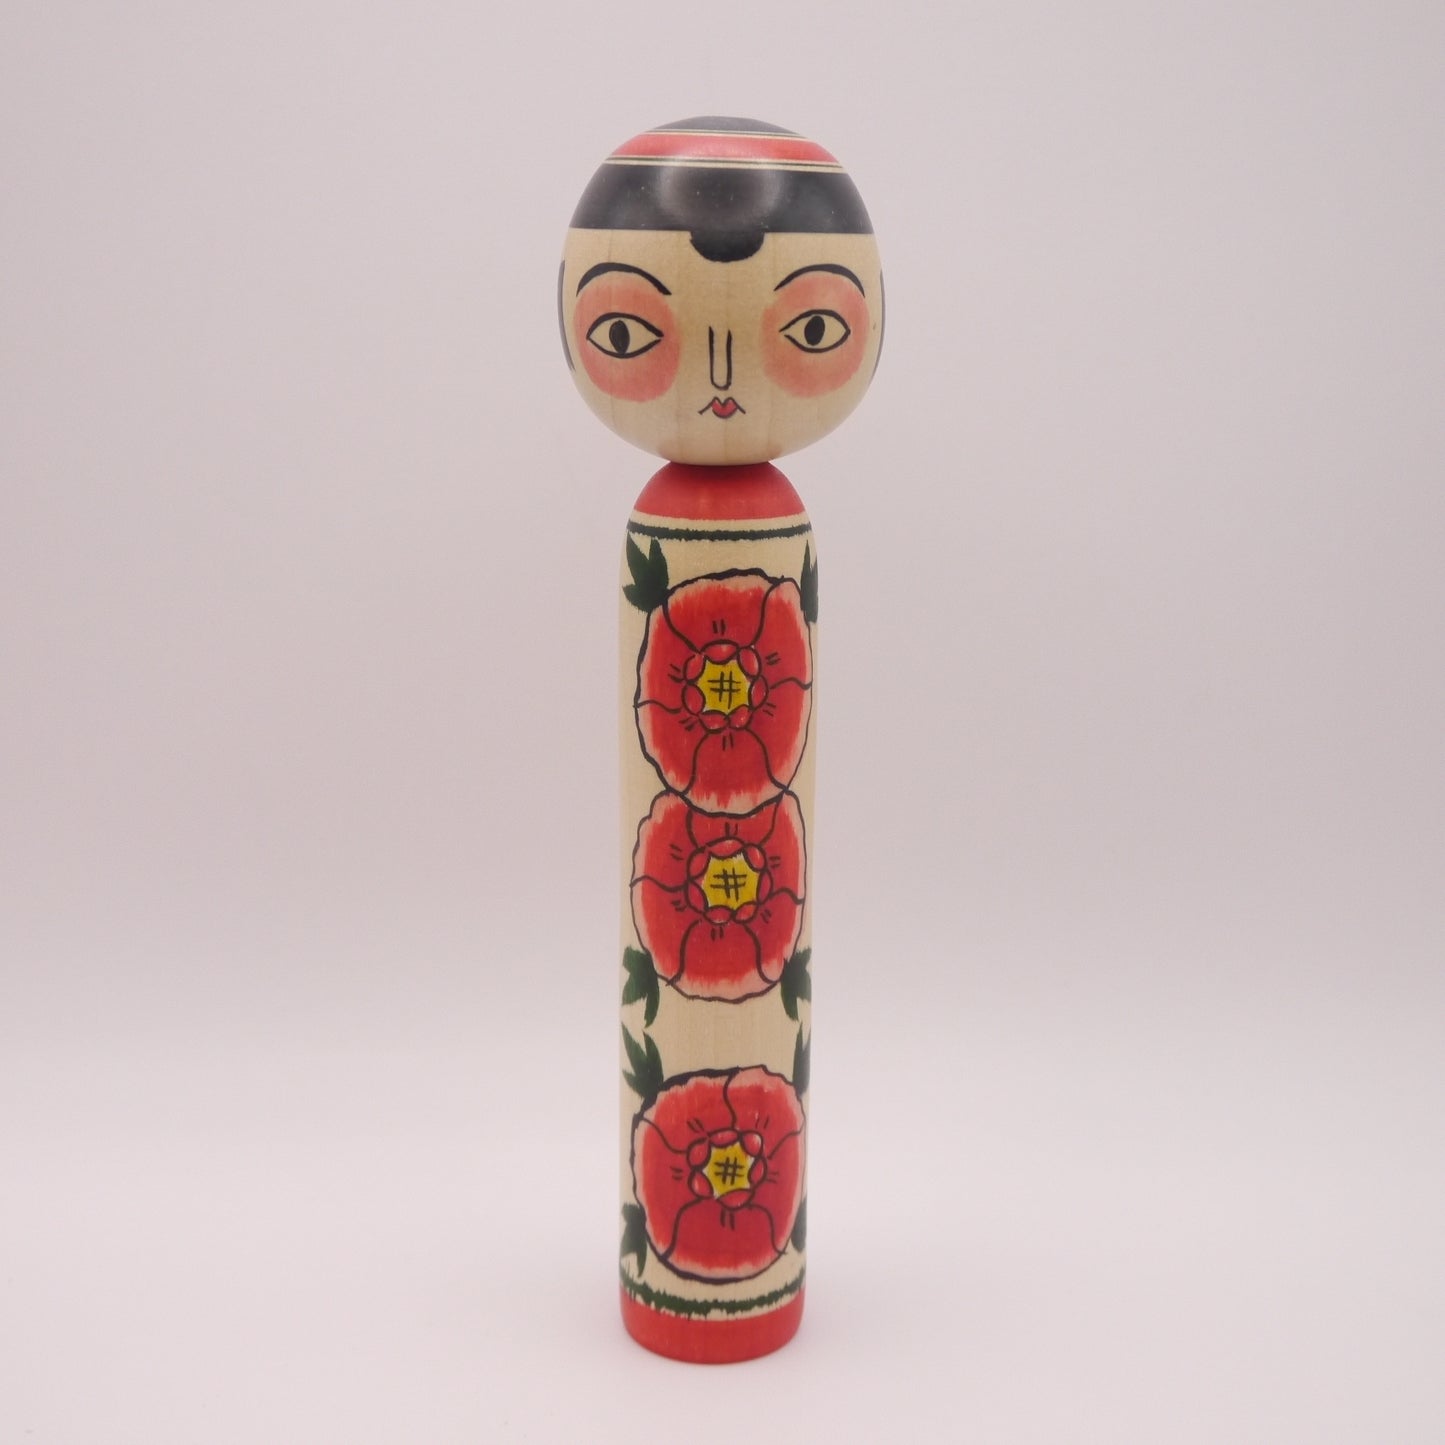 18cm Kokeshi doll by Koji Seya Takobozu